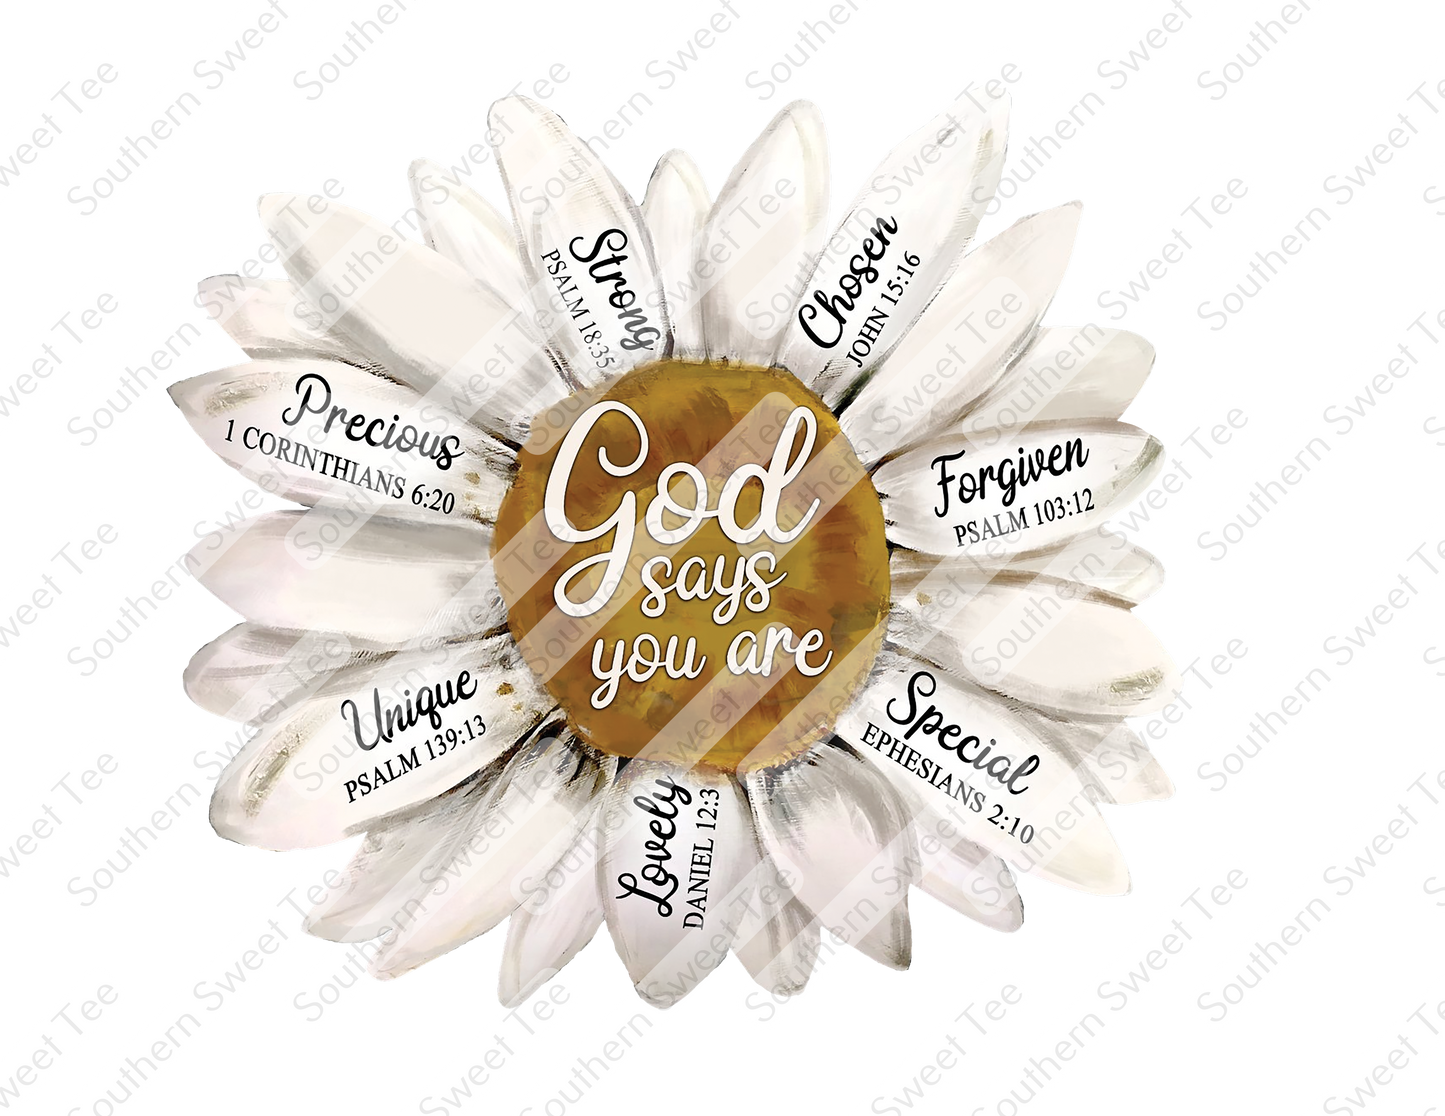 God says you are daisy .bnb